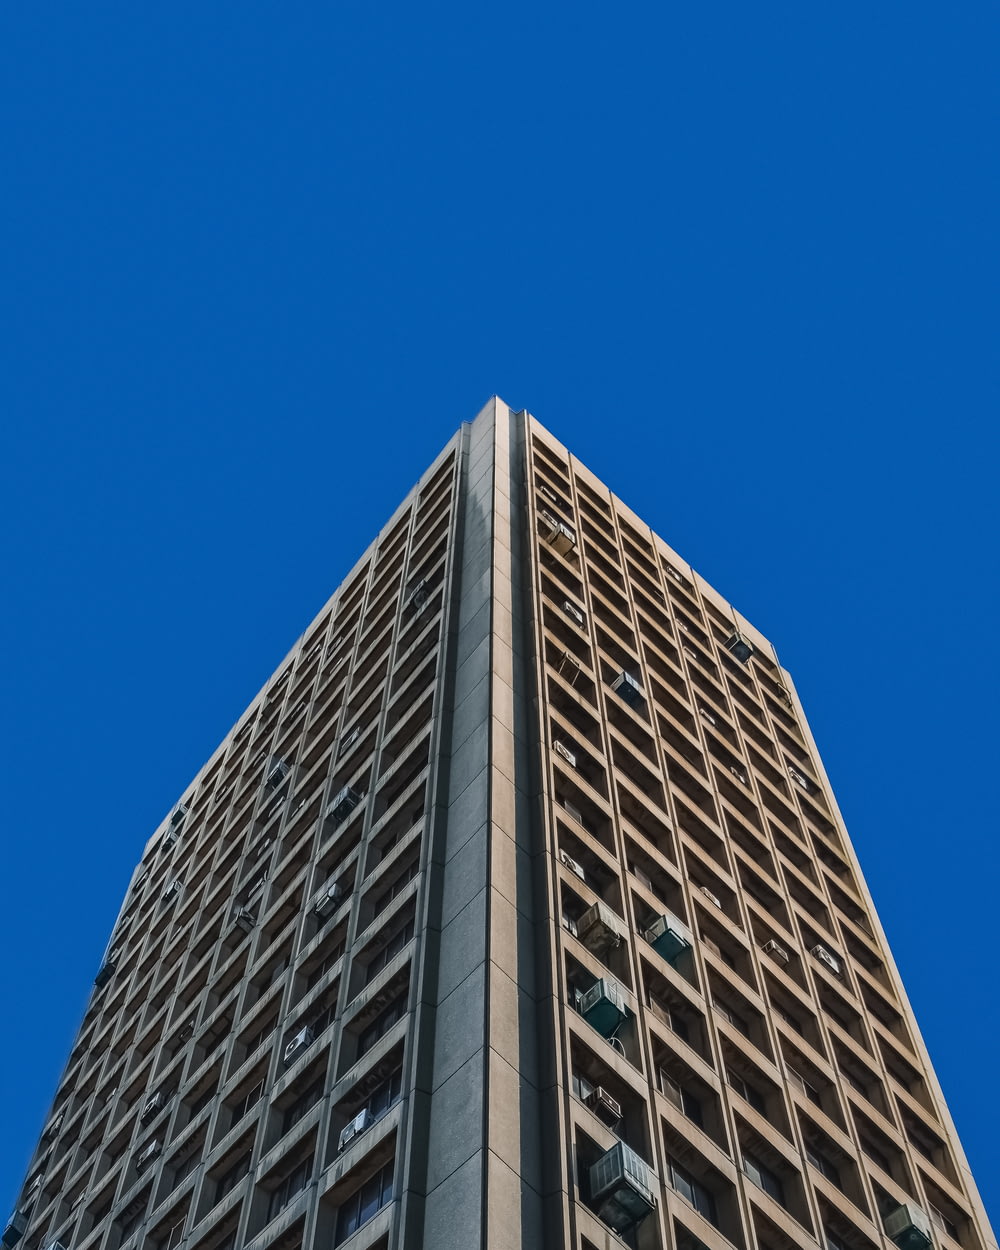 fotografia ad angolo basso di un edificio in cemento grigio sotto il cielo blu durante il giorno